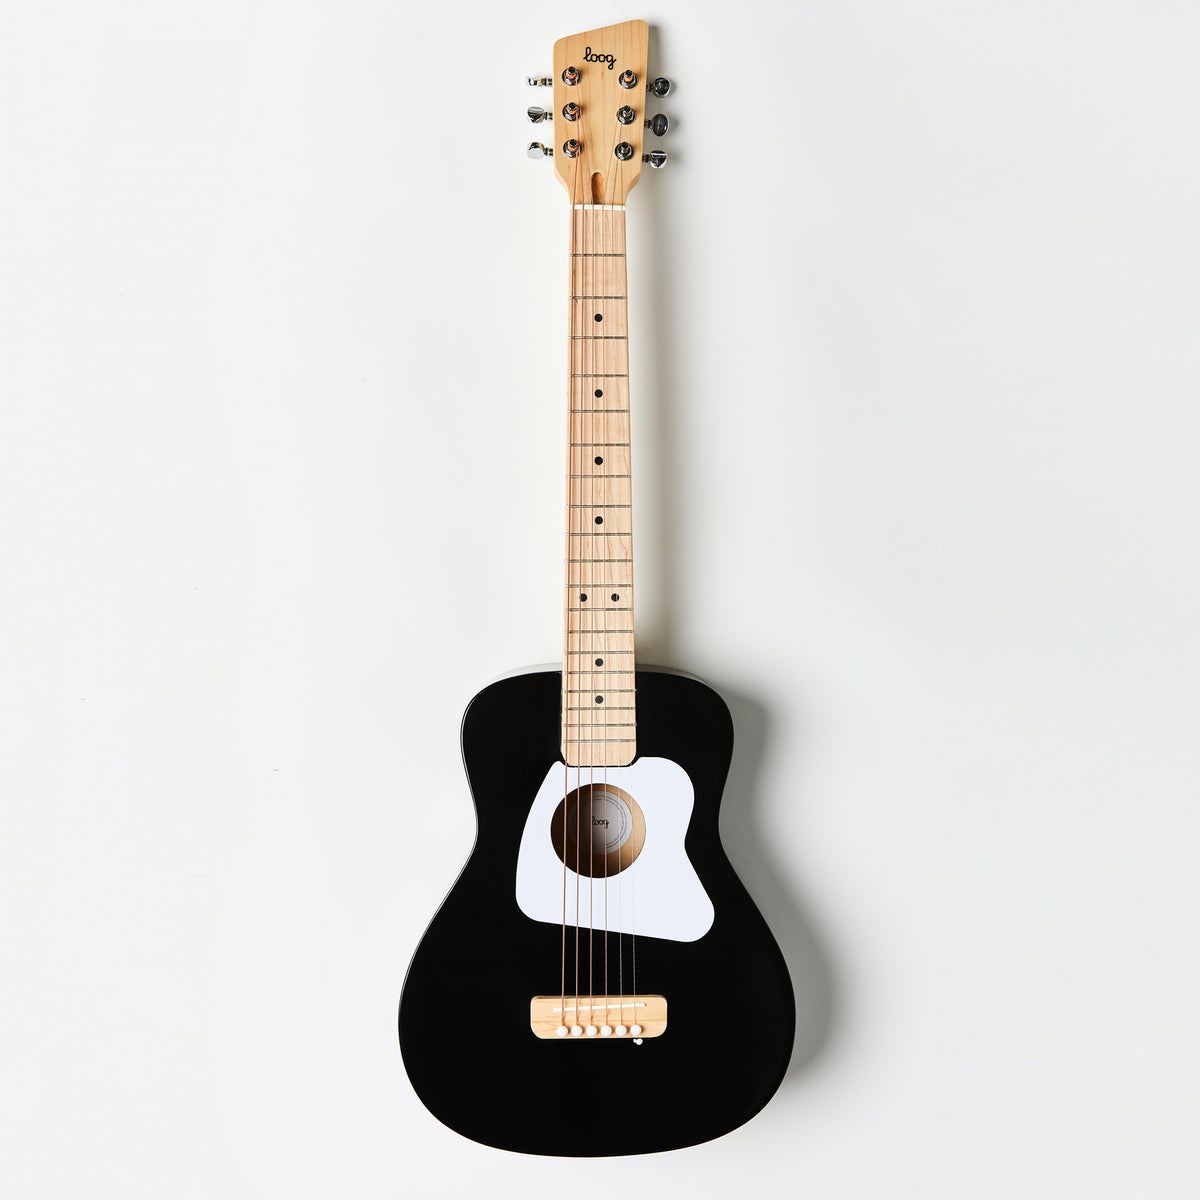 black-guitar-strap-gig-bag black-guitar-strap-wall-hanger black-guitar-strap-stand